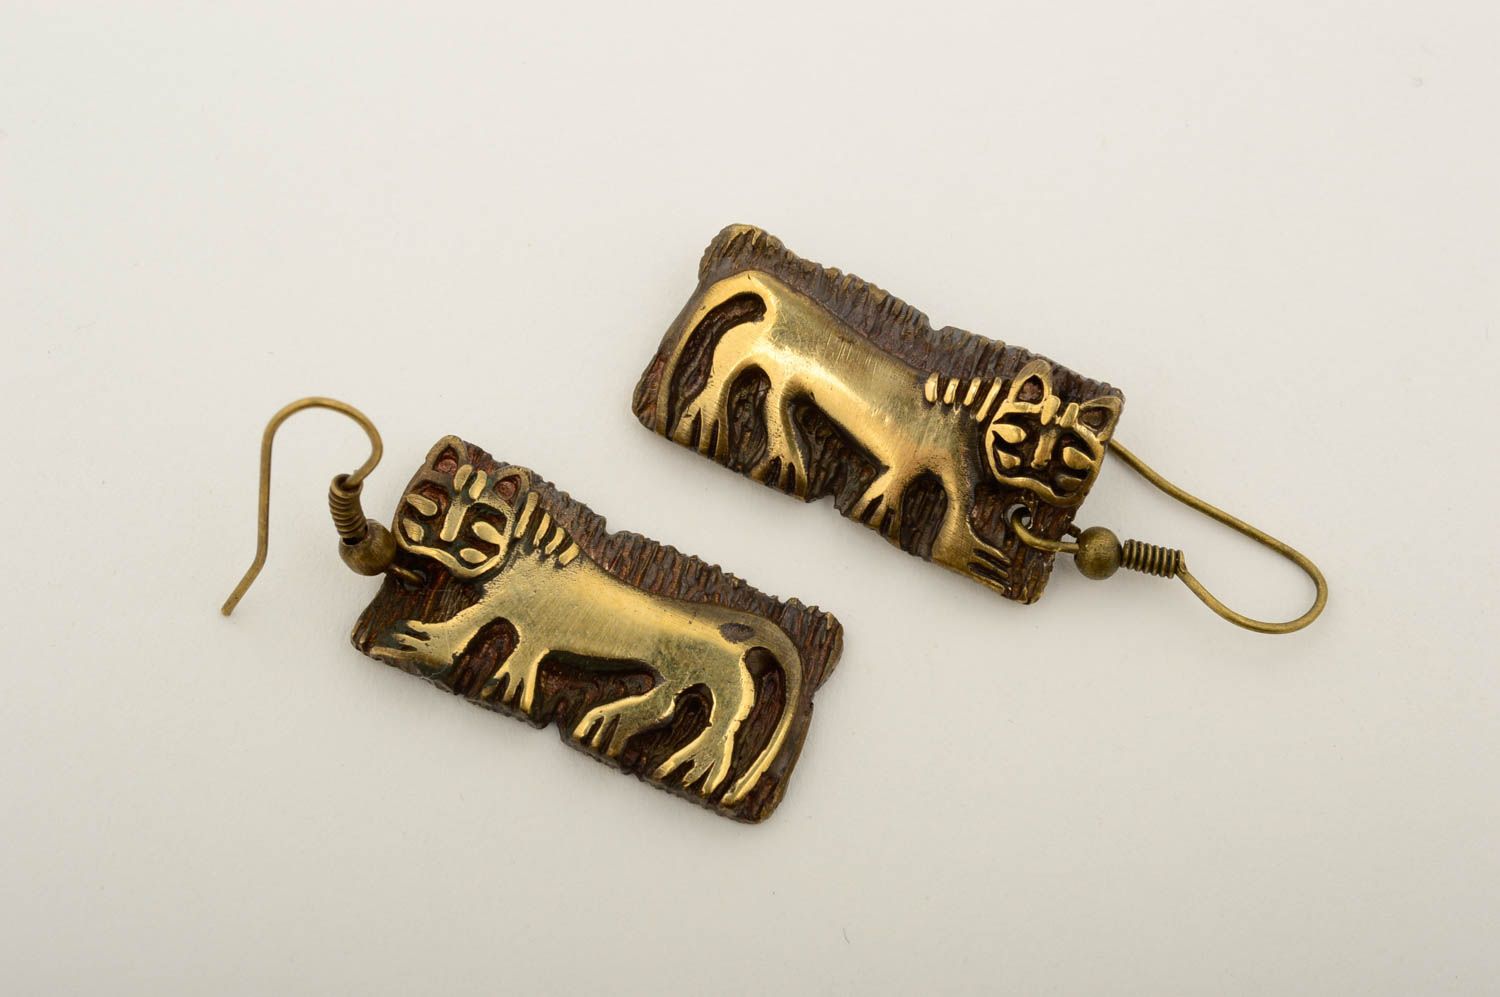 Unusual handmade metal earrings handmade accessories cool jewelry designs photo 3